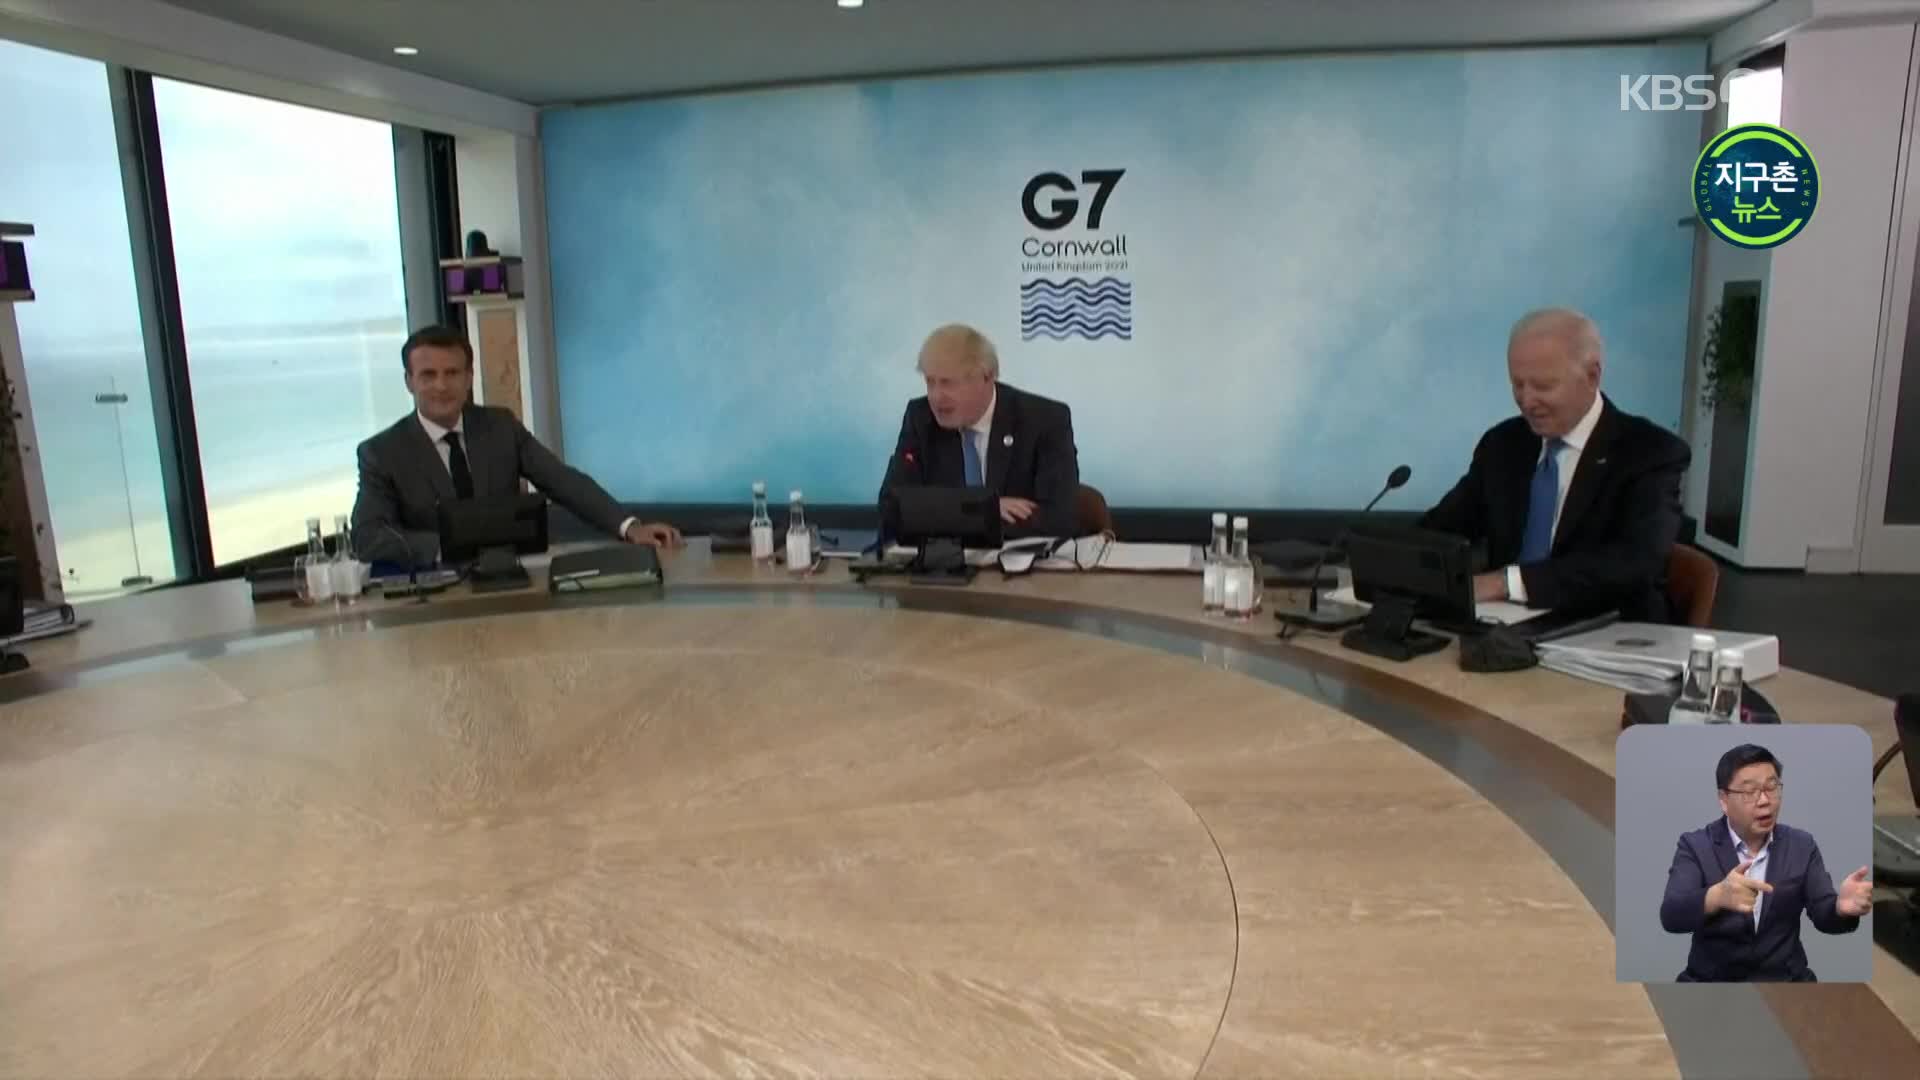 영국, 콘월에서 감염 급증…정부 “G7 때문 아냐”